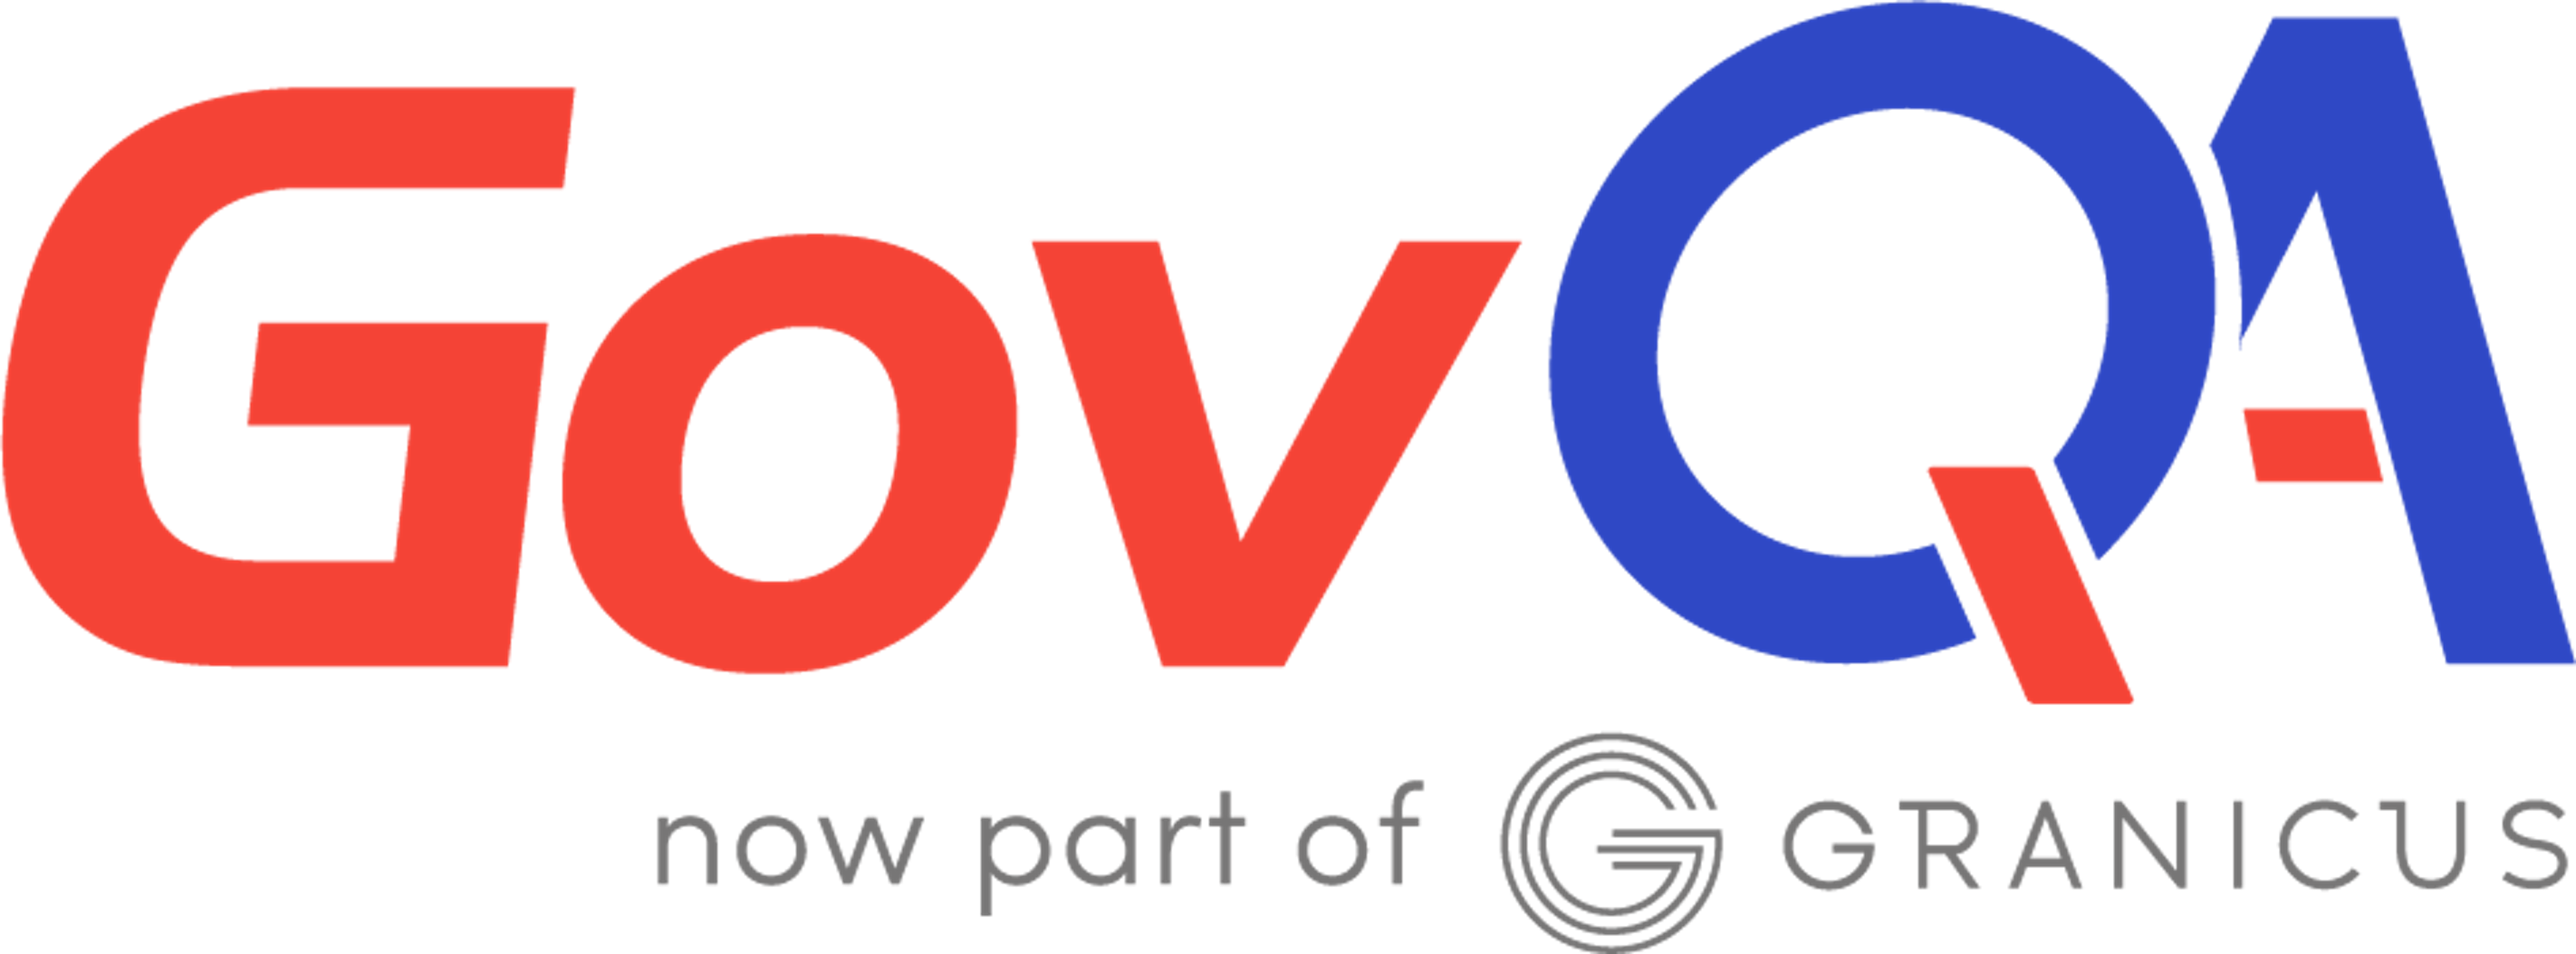 GovQA Logo